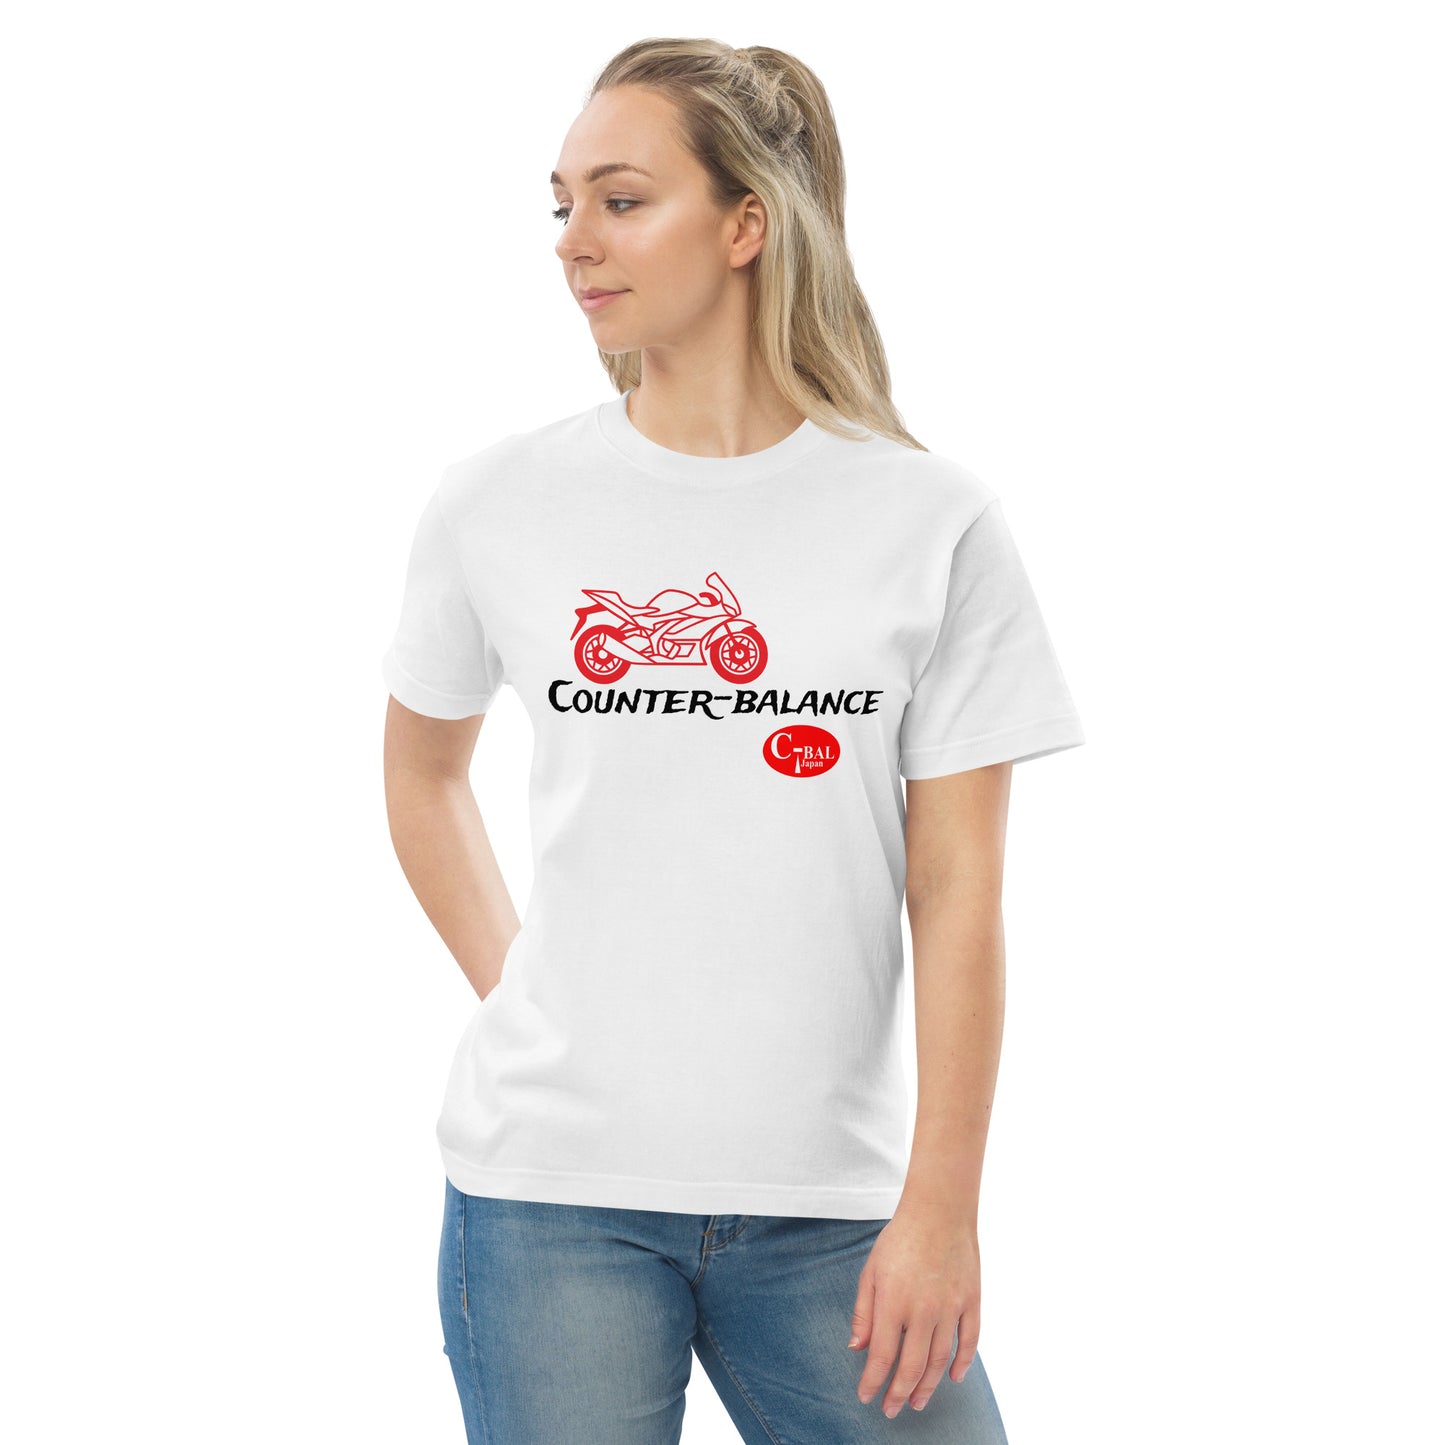 D002 - T-shirt kapas berkualiti tinggi (MC Super Sports: Putih/Merah)